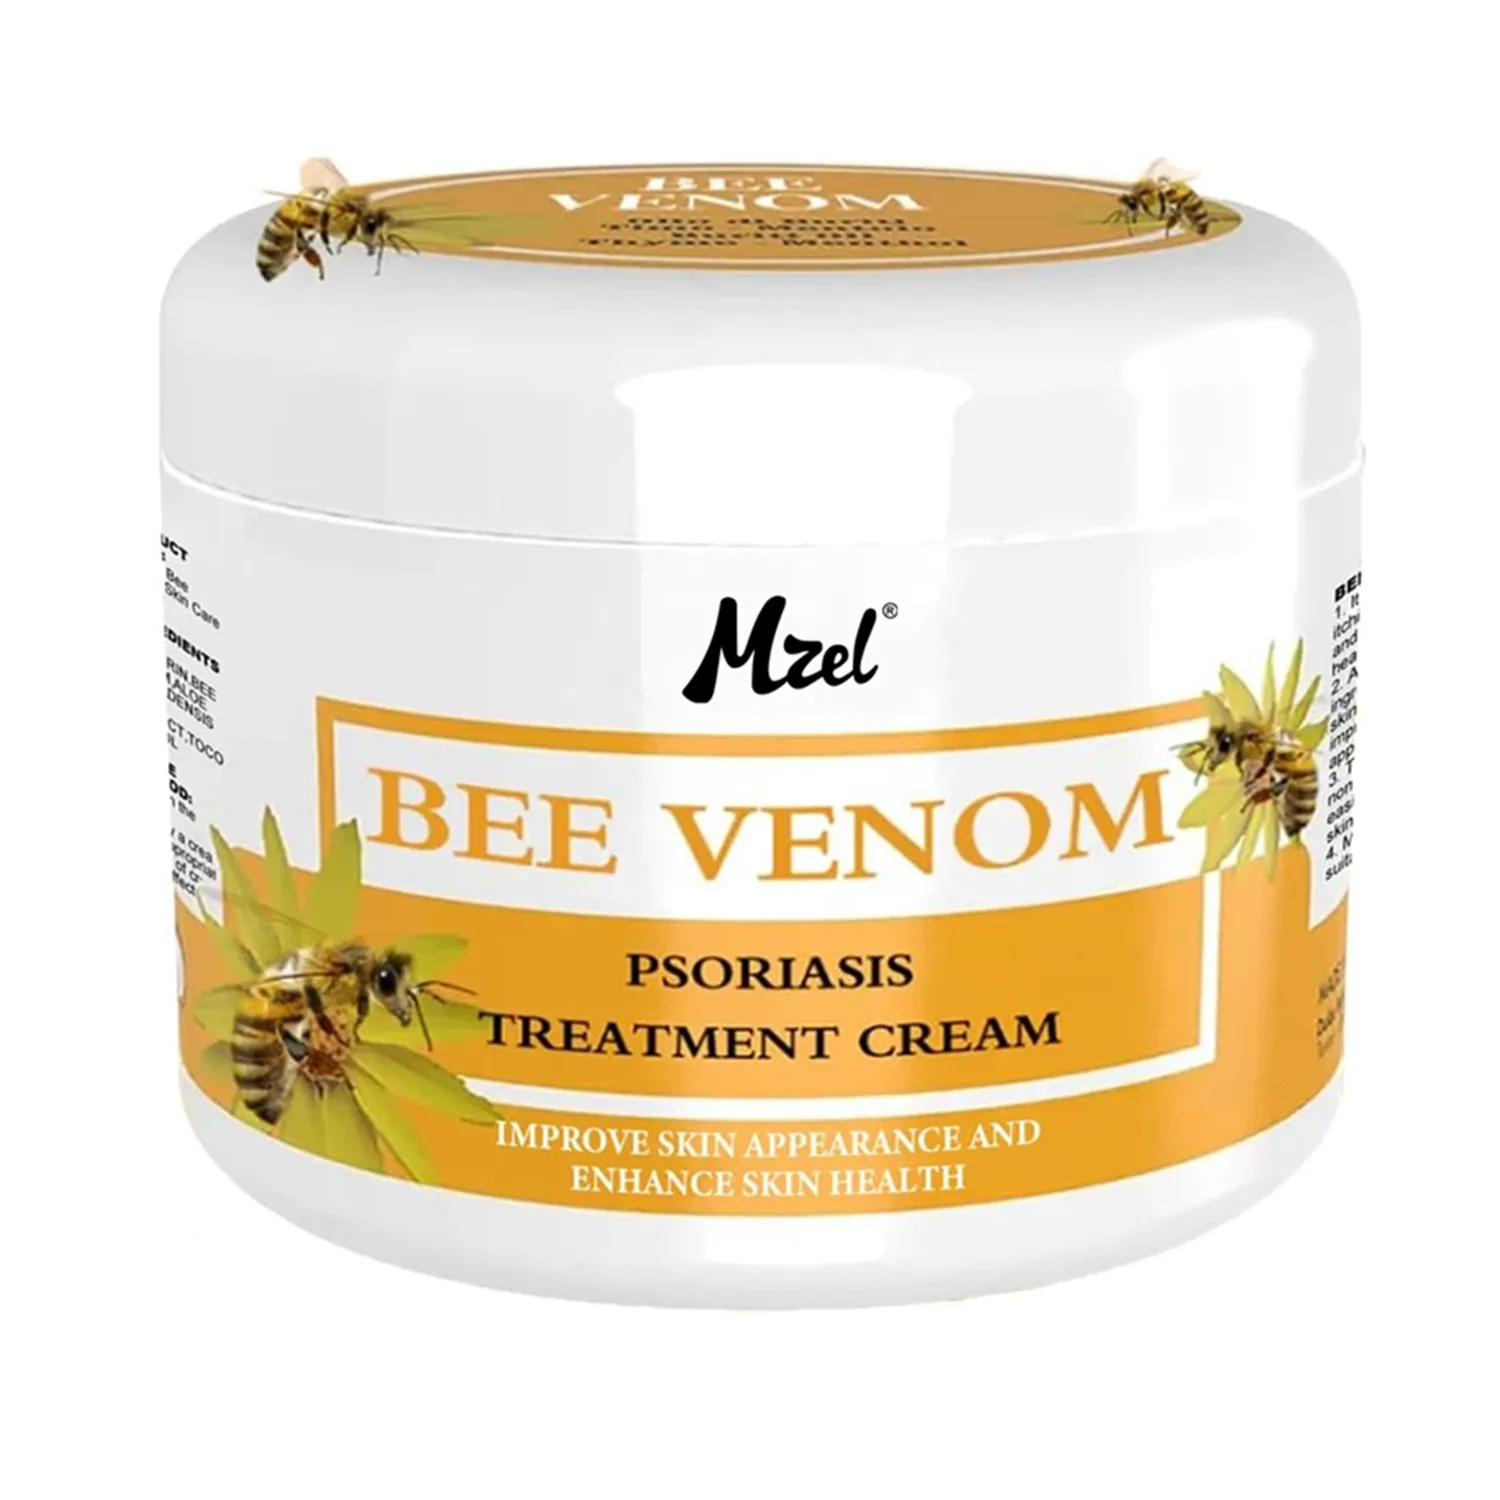 Creme de psoríase veneno de abelha mel creme de dor veneno de abelha, fornece para costas, pescoço, mãos, pés articulações